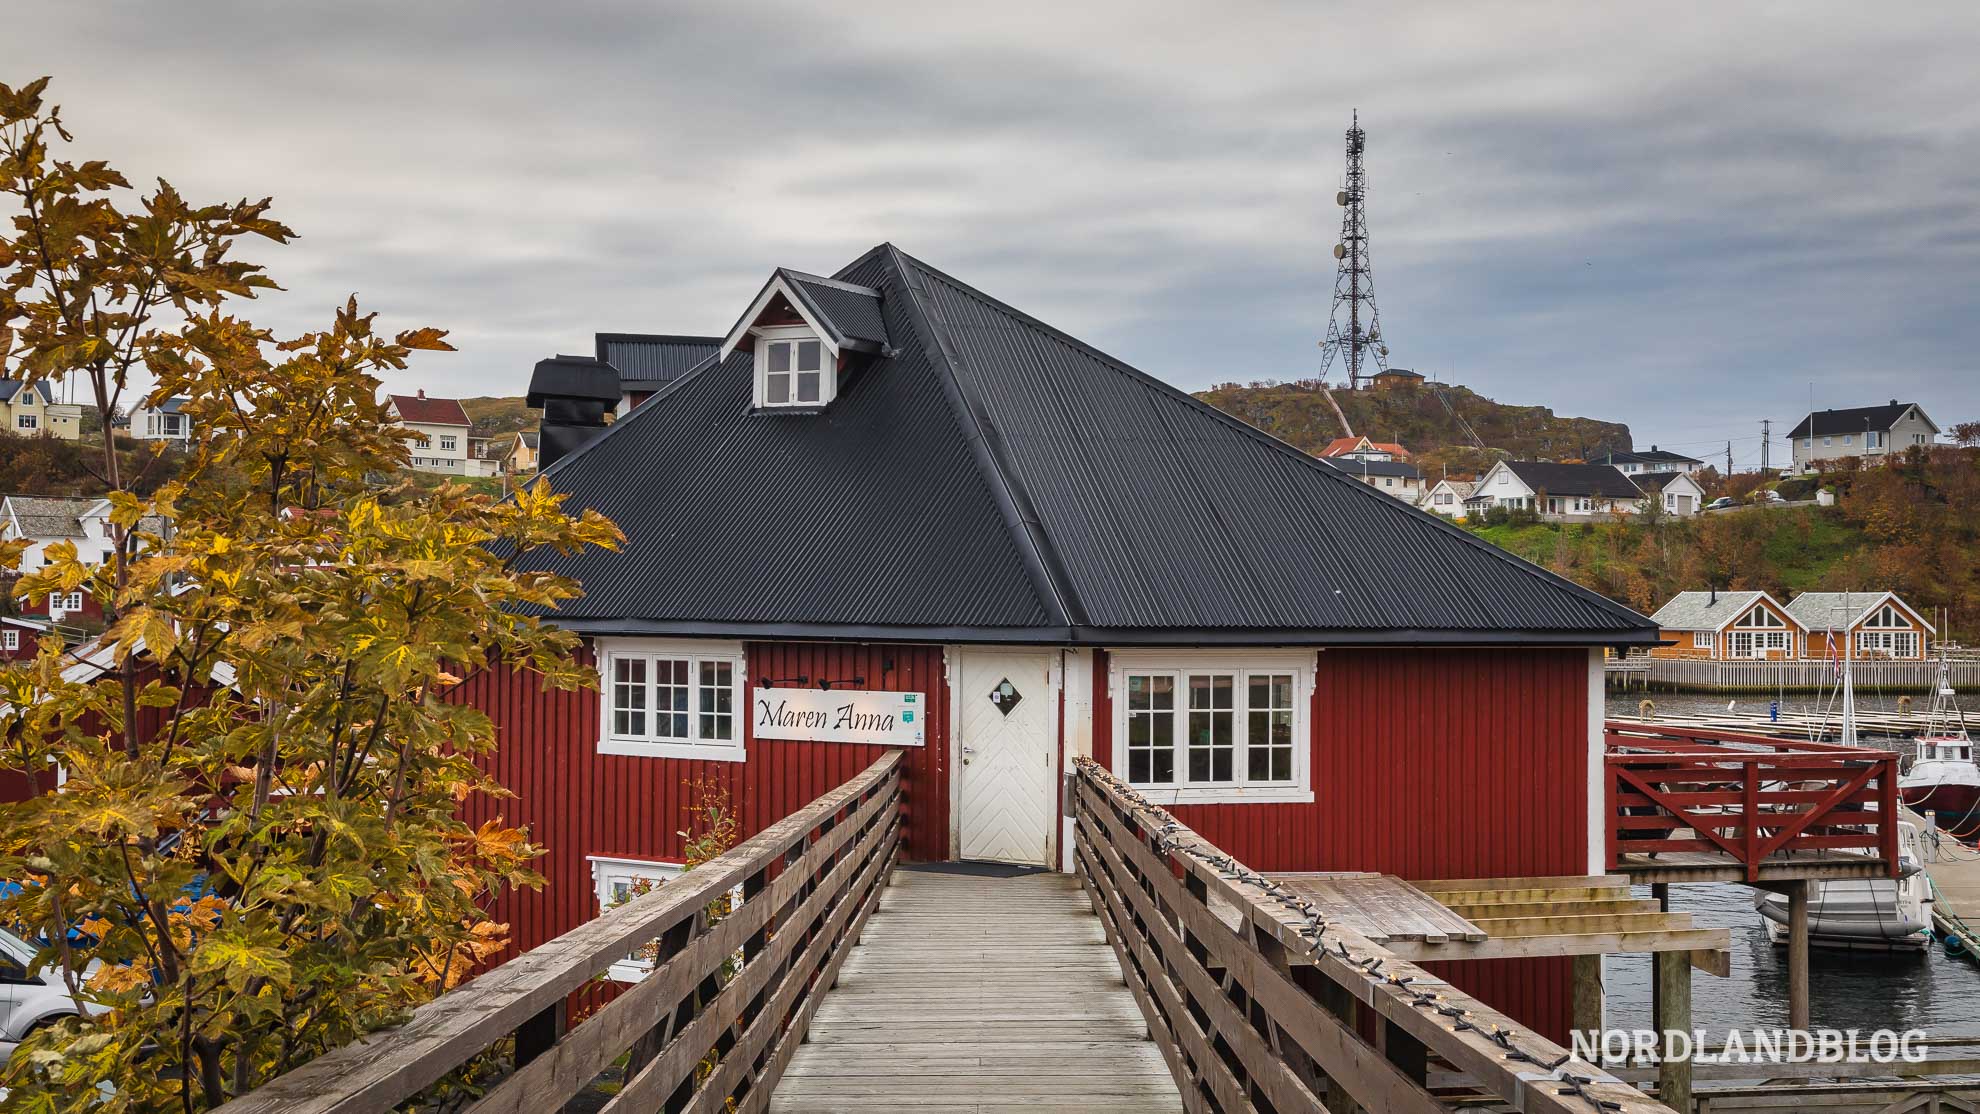 Restaurant Maren Anna lädt zum Essen auf den Lofoten in Nordnorwegen ein